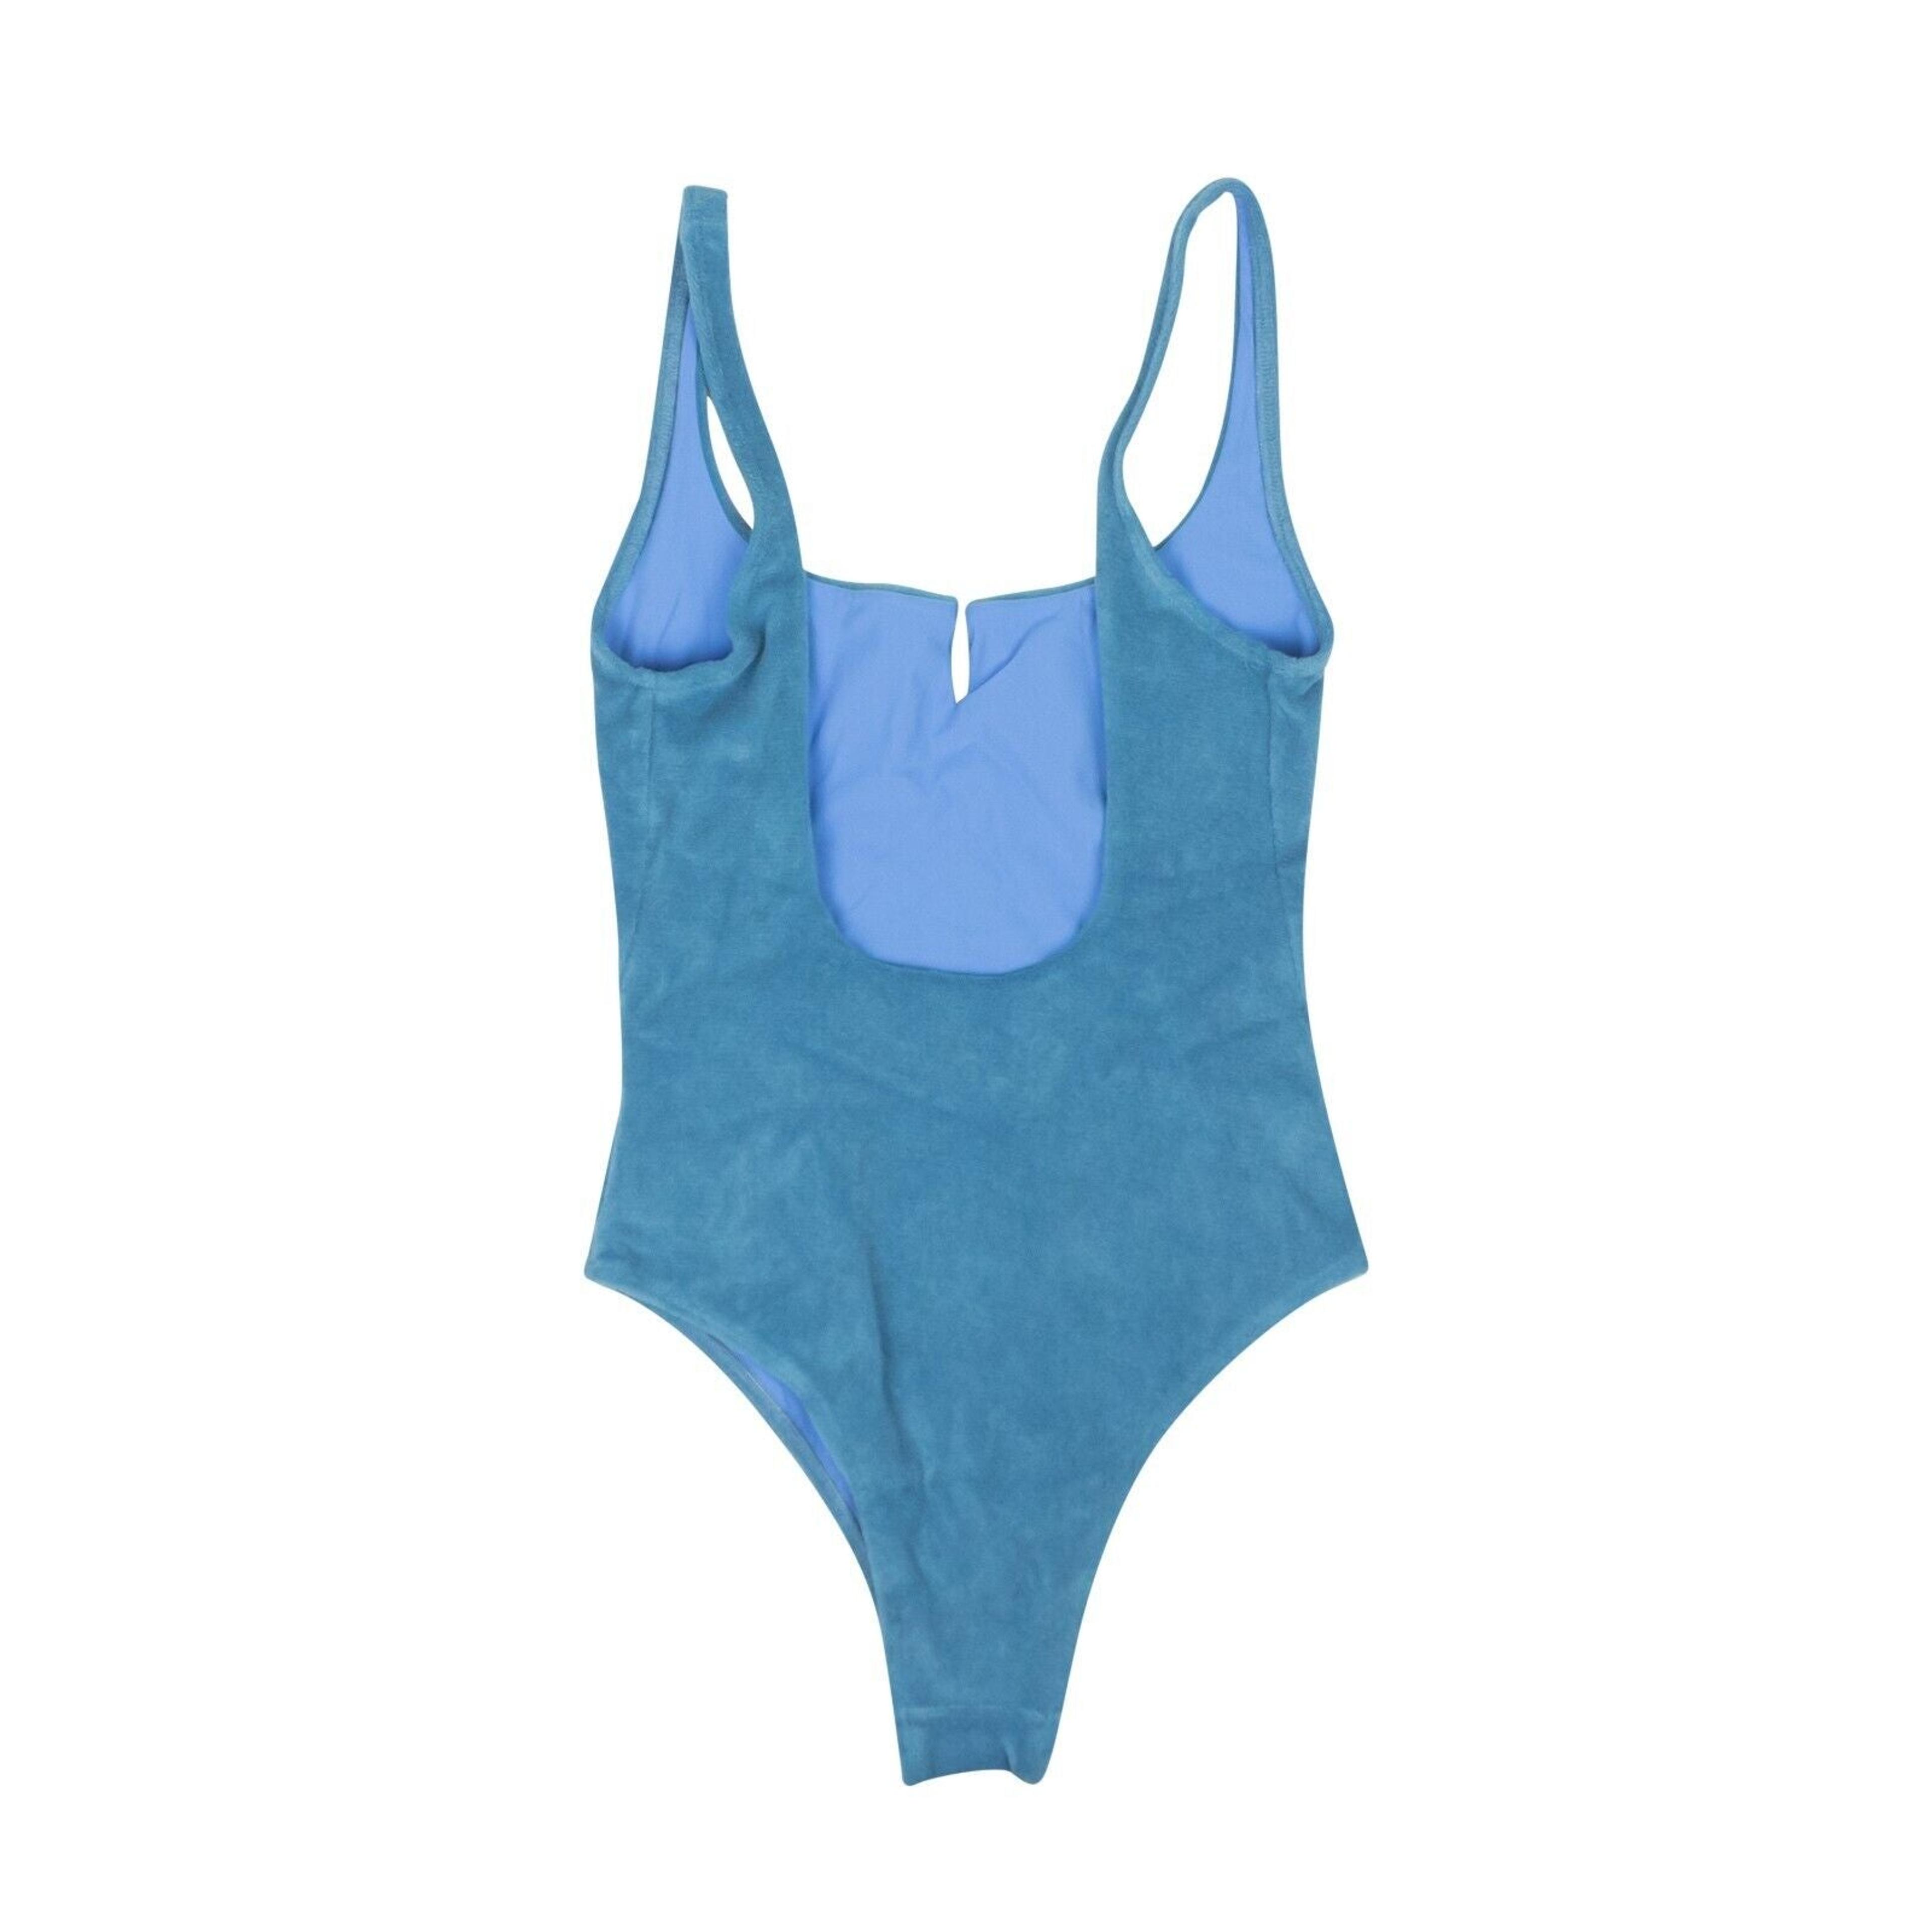 Alternate View 2 of Off-White C/O Virgil Abloh Towel Slit Swimsuit - Blue